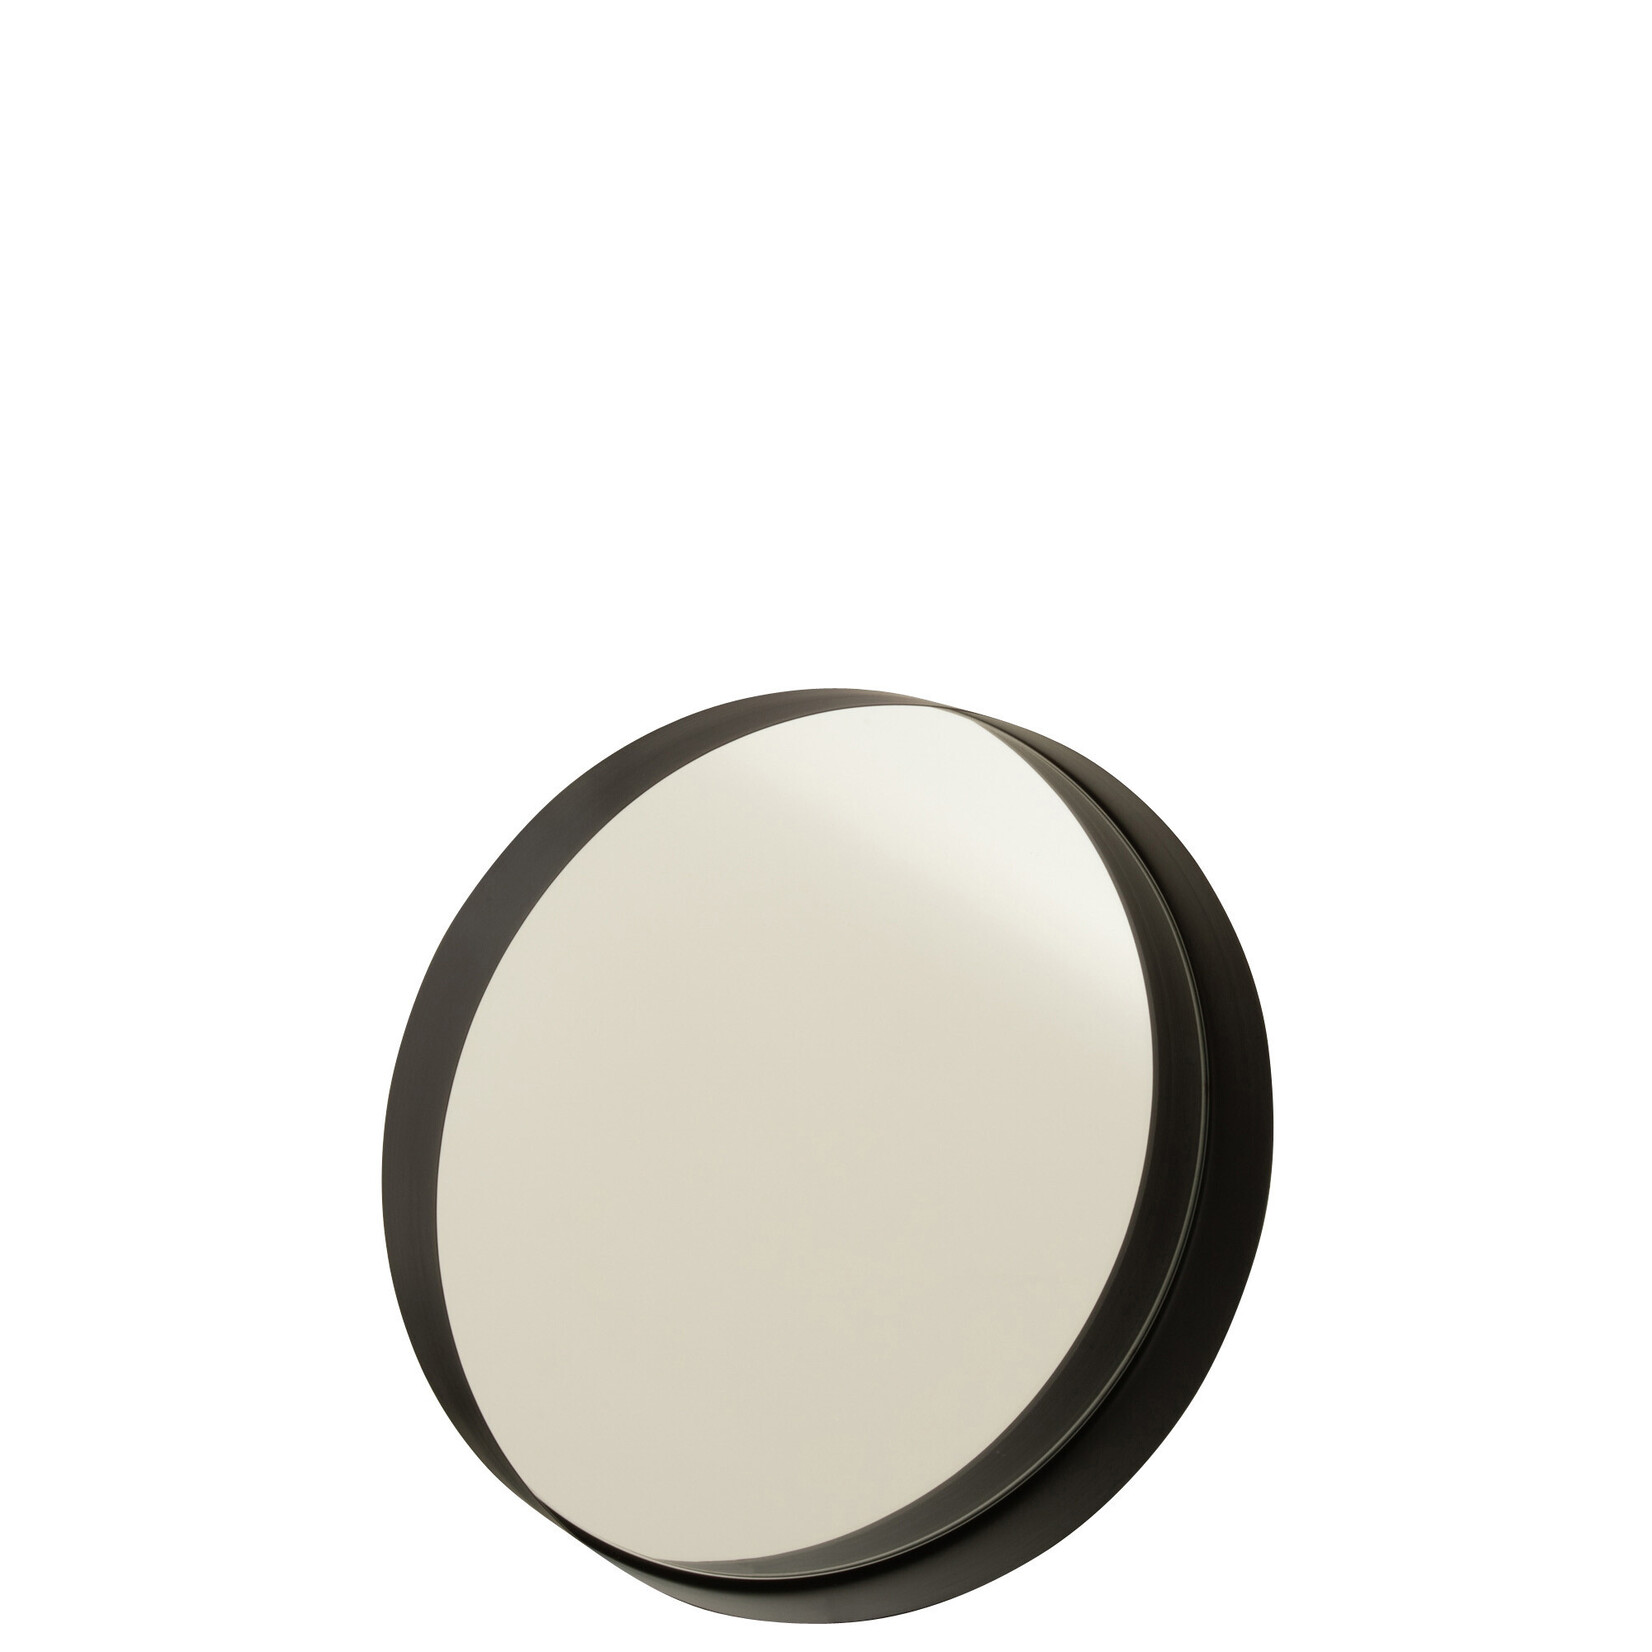 J-Line Spiegel met ronde metalen zwarte rand, klein formaat.